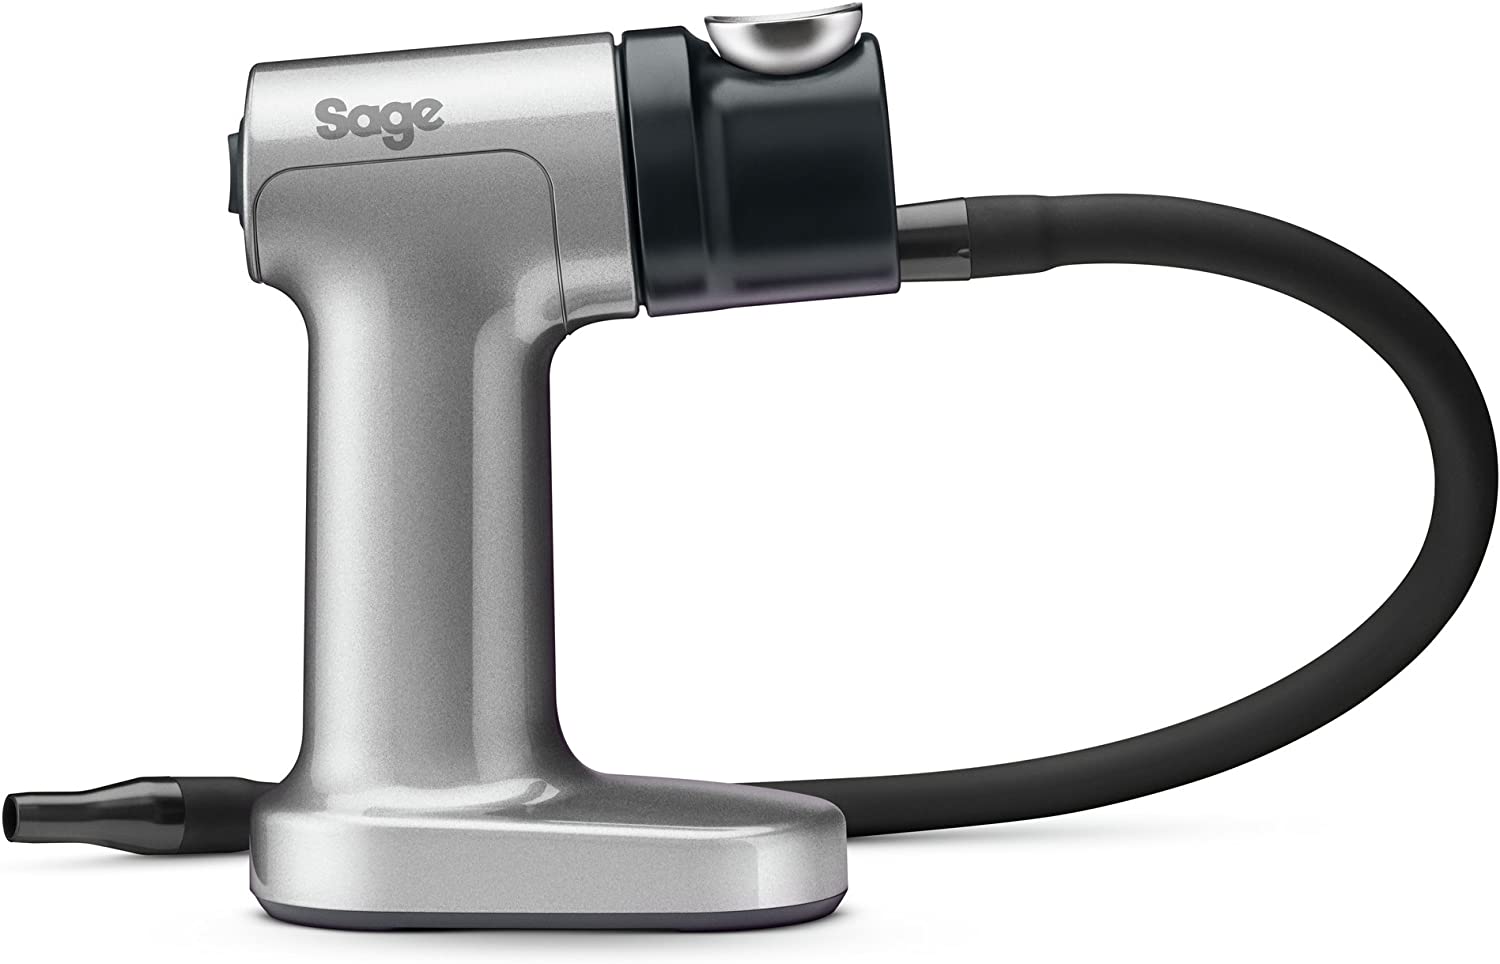 Sage Appliances SSM600 The Tuxedo Gun, Smoked Pistol